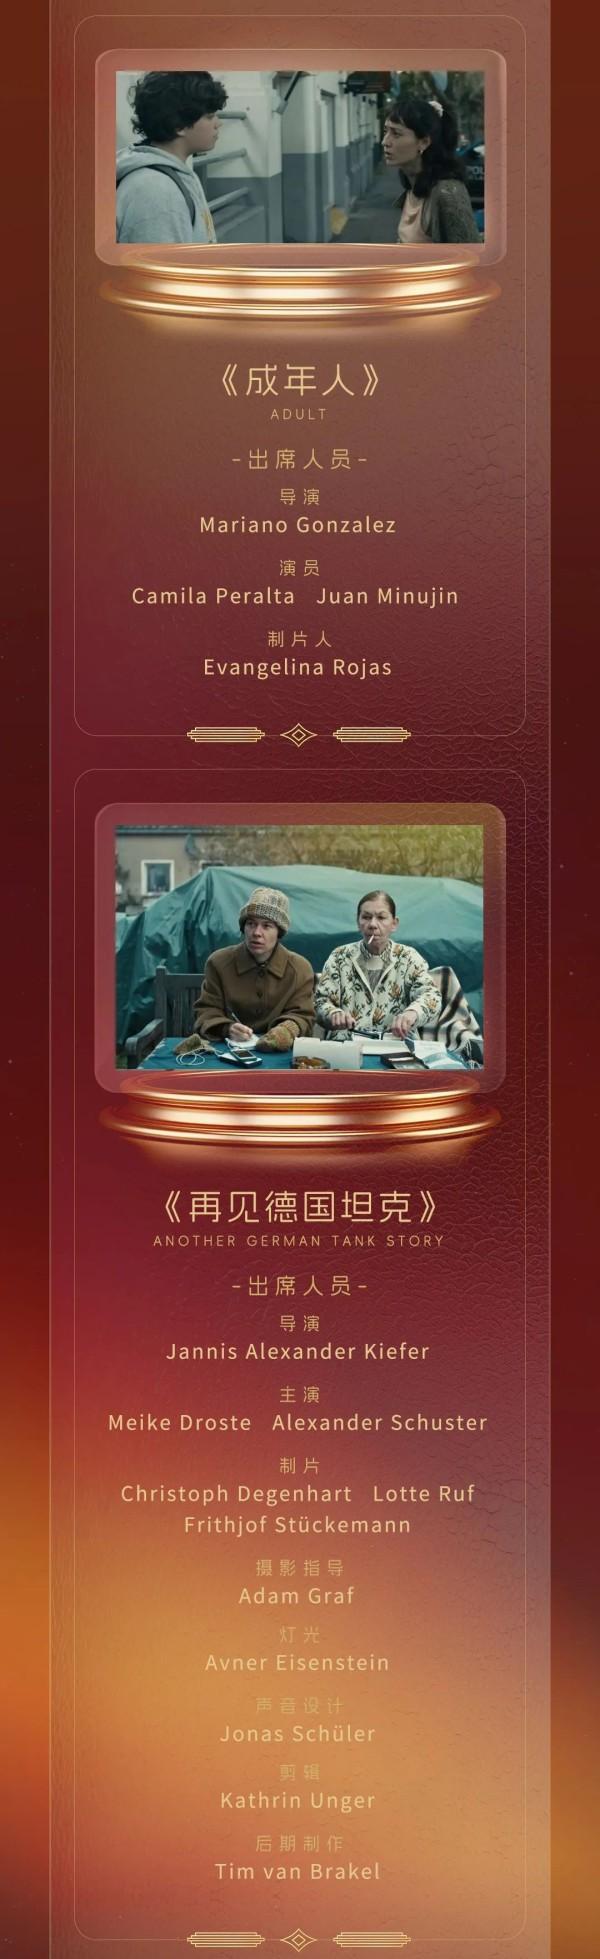 上海国际电影节金爵盛典 群星闪耀红毯盛况